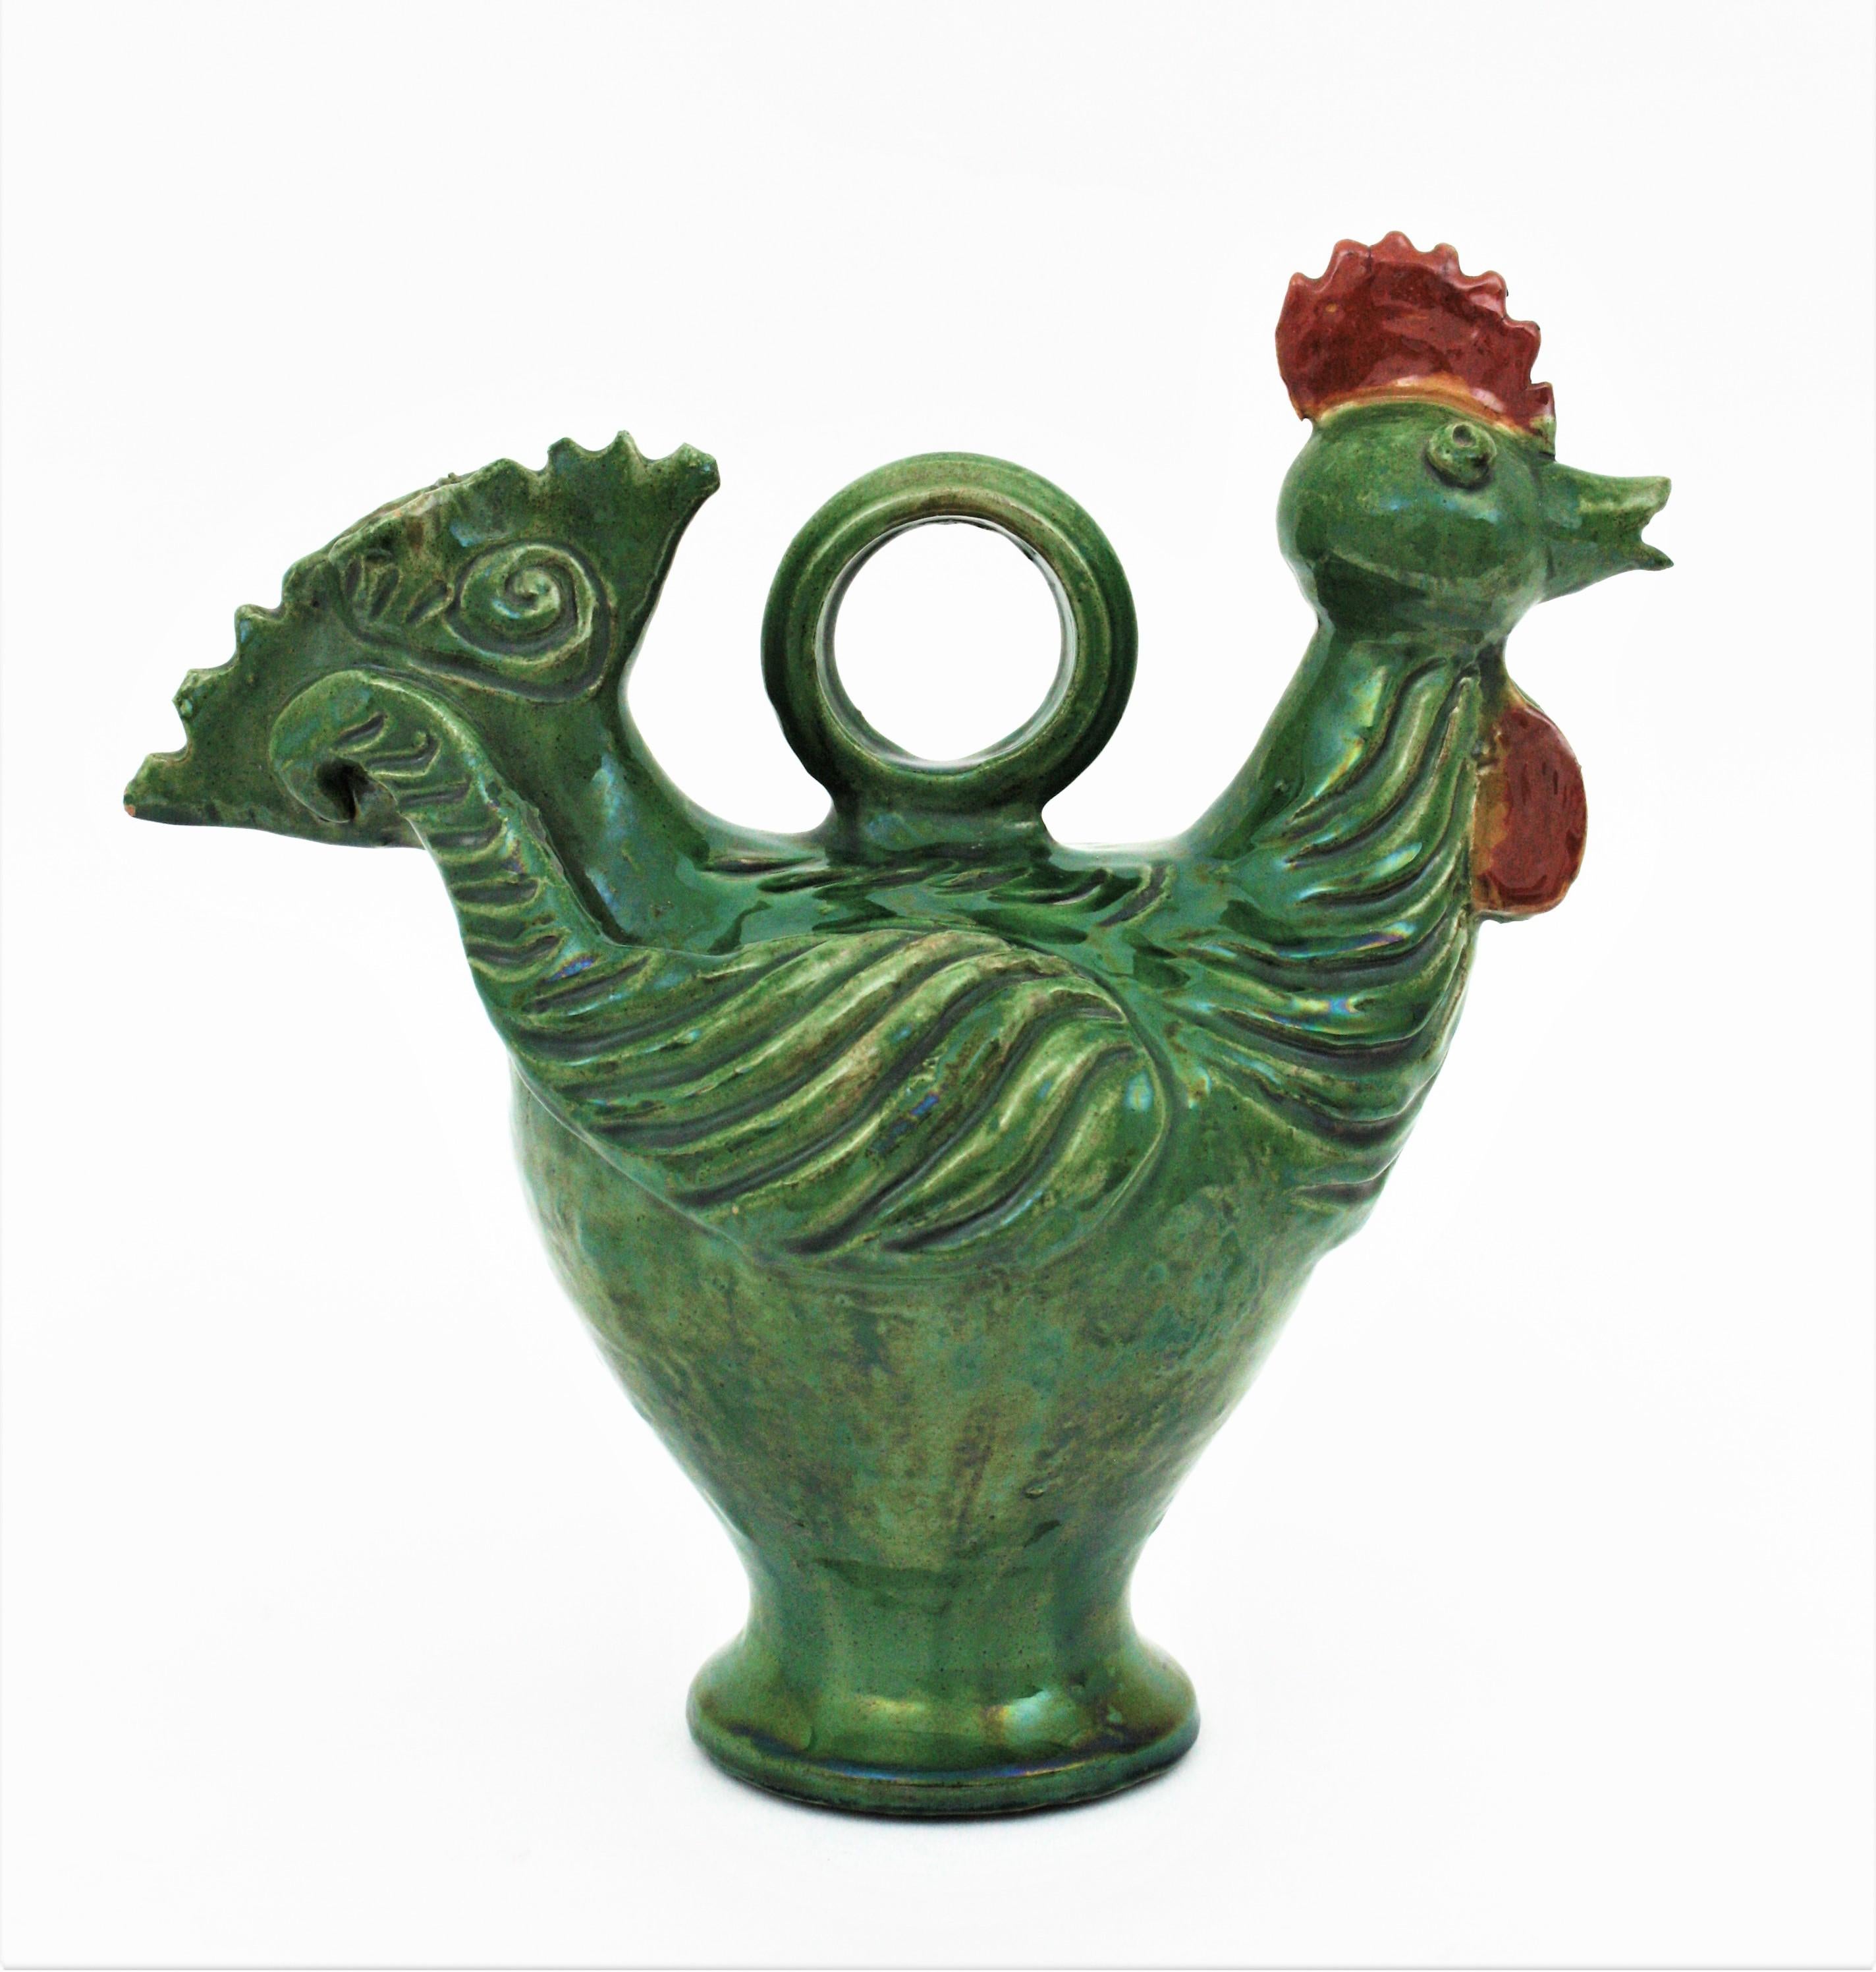 Auffälliger grüner und brauner Majolika-Keramikhahn, Spanien, 1950er Jahre.
Dekorativer Krug aus andalusischer Keramik in Form eines Hahns in Grüntönen mit braunen Akzenten. Traditionell verwendet, um Wasser einzuschließen und es frisch zu